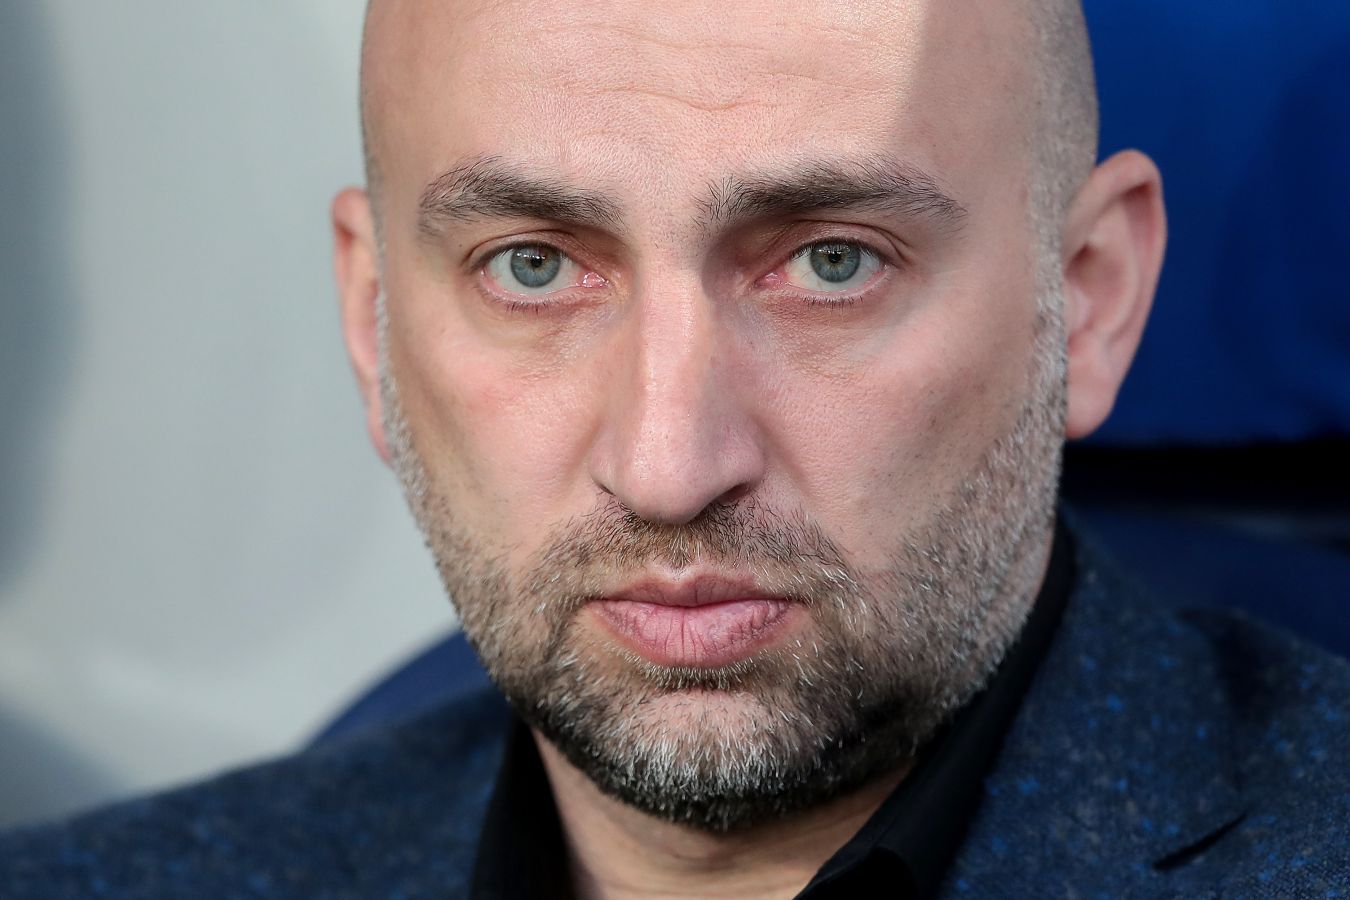 Адиев: у «Зенита» будет определённое преимущество в матче с «Кайратом»